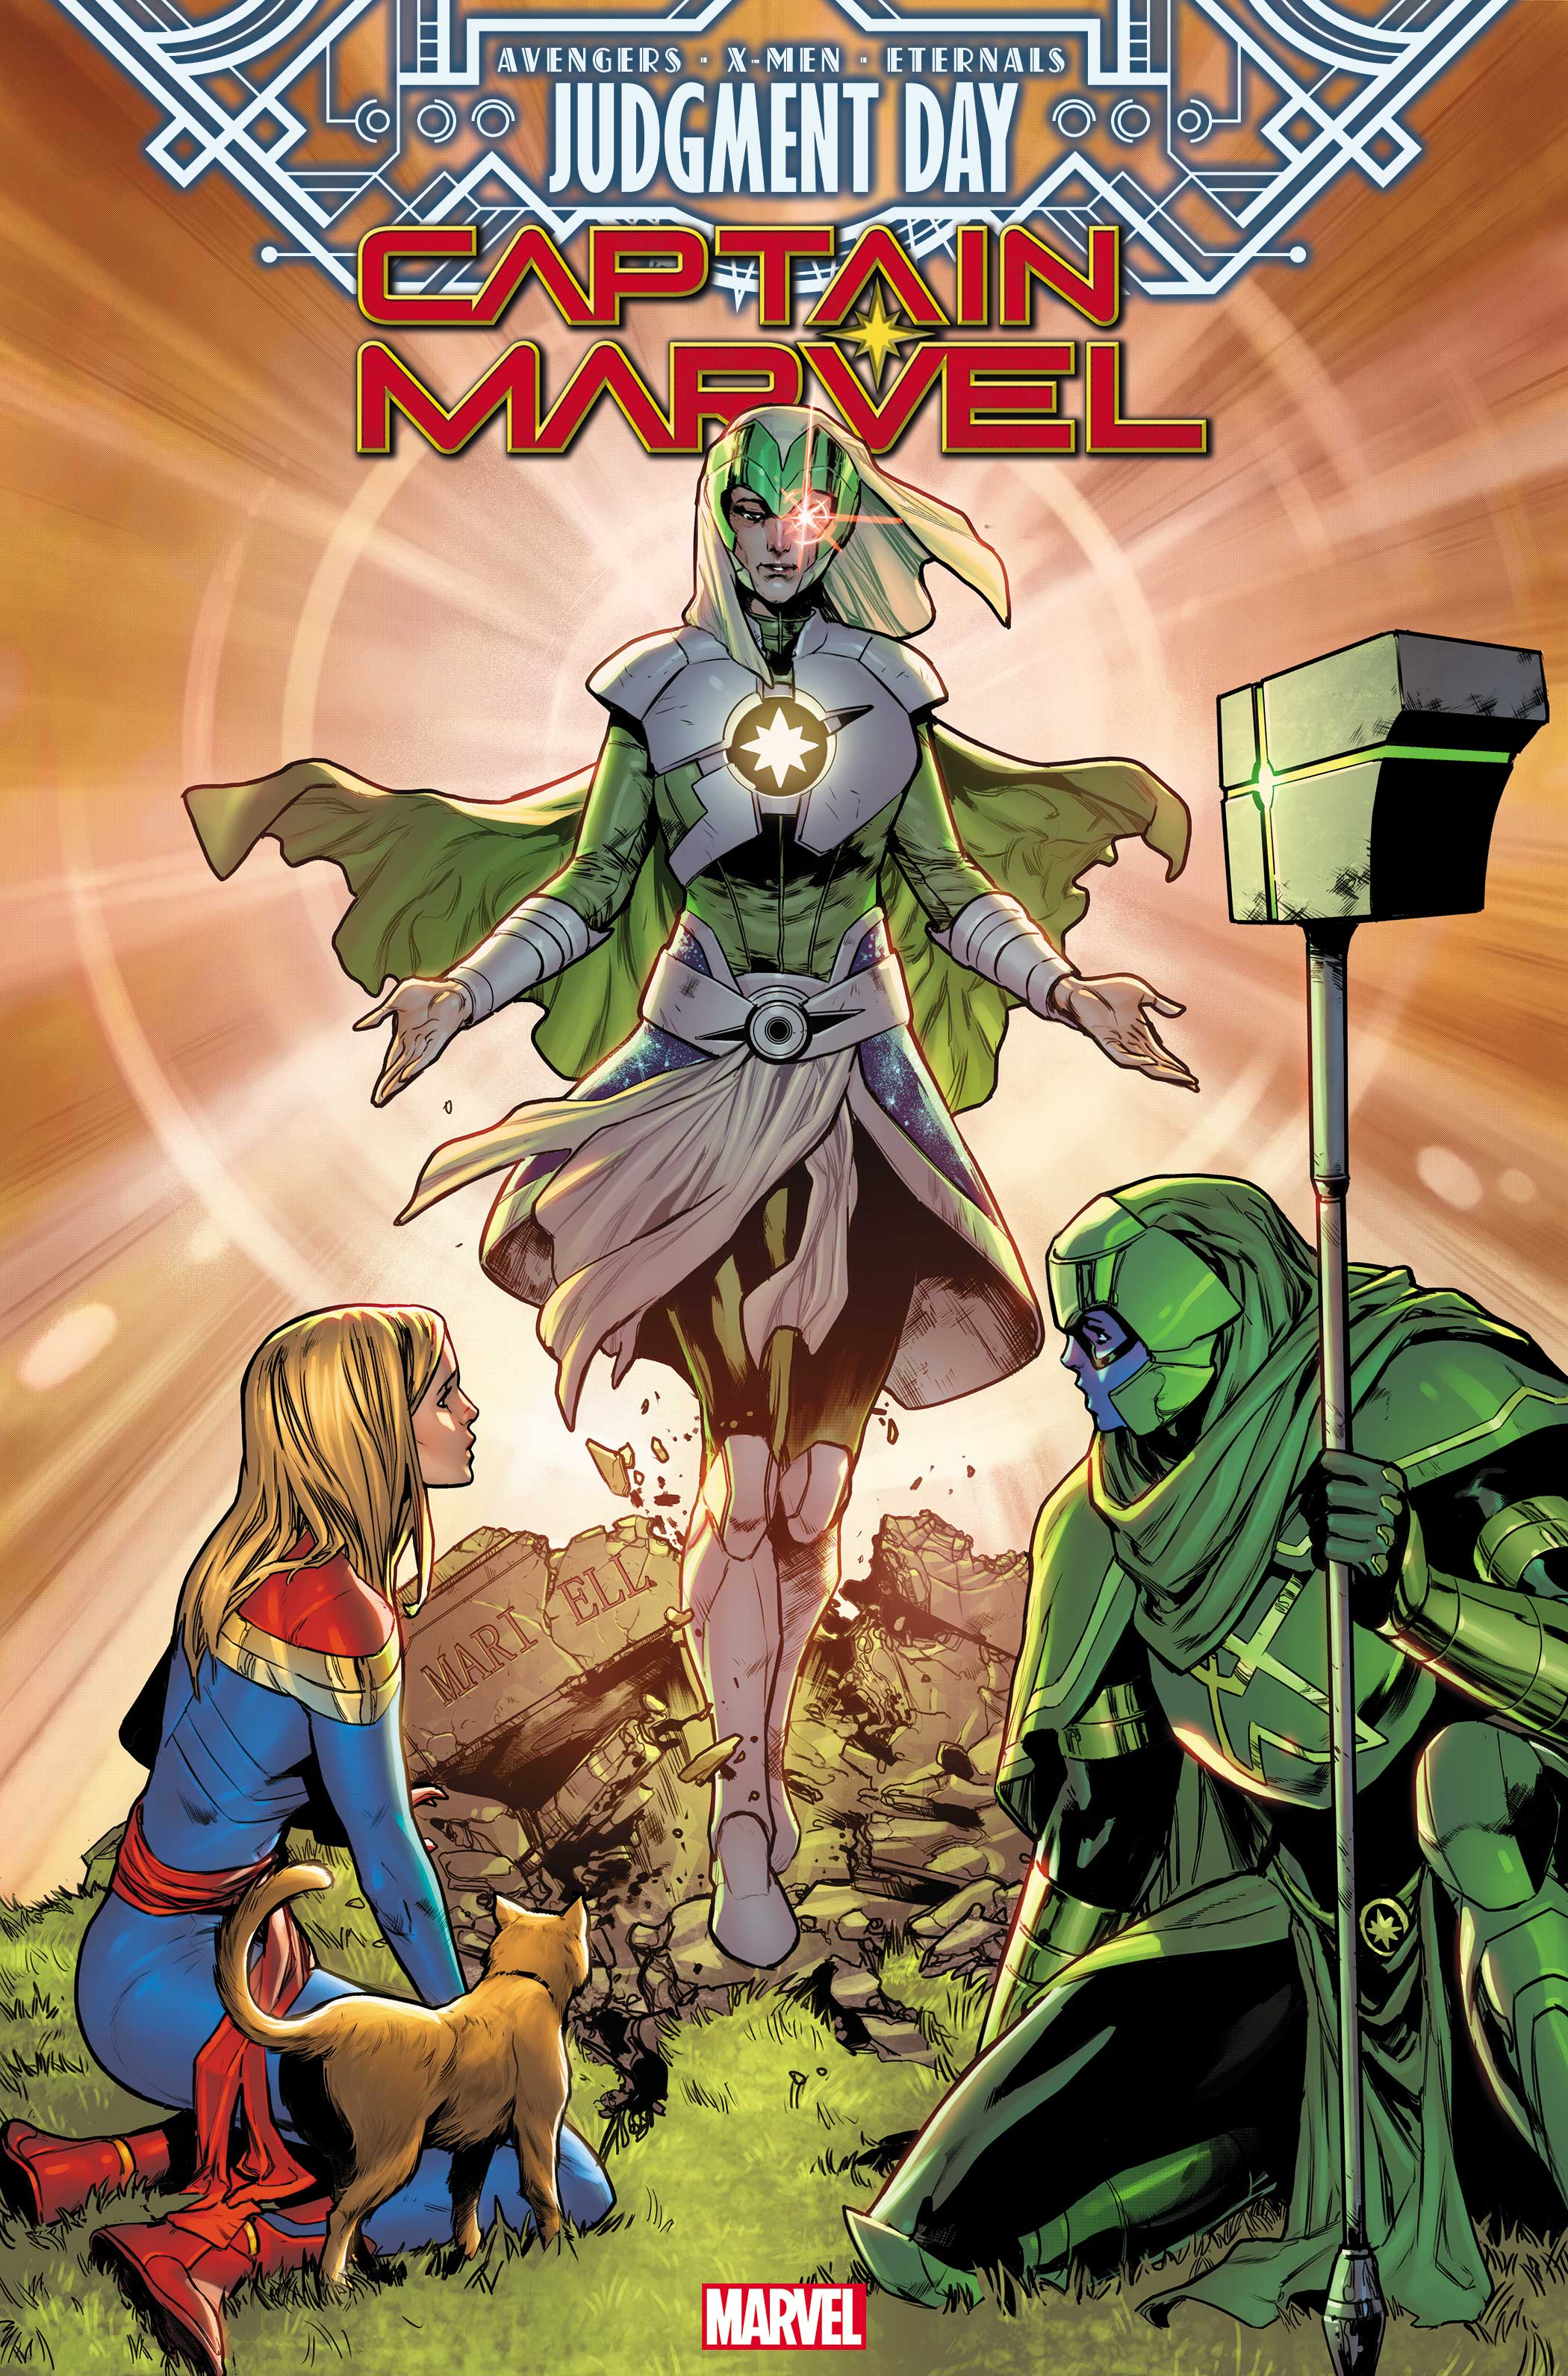 Captain Marvel (2019) #42